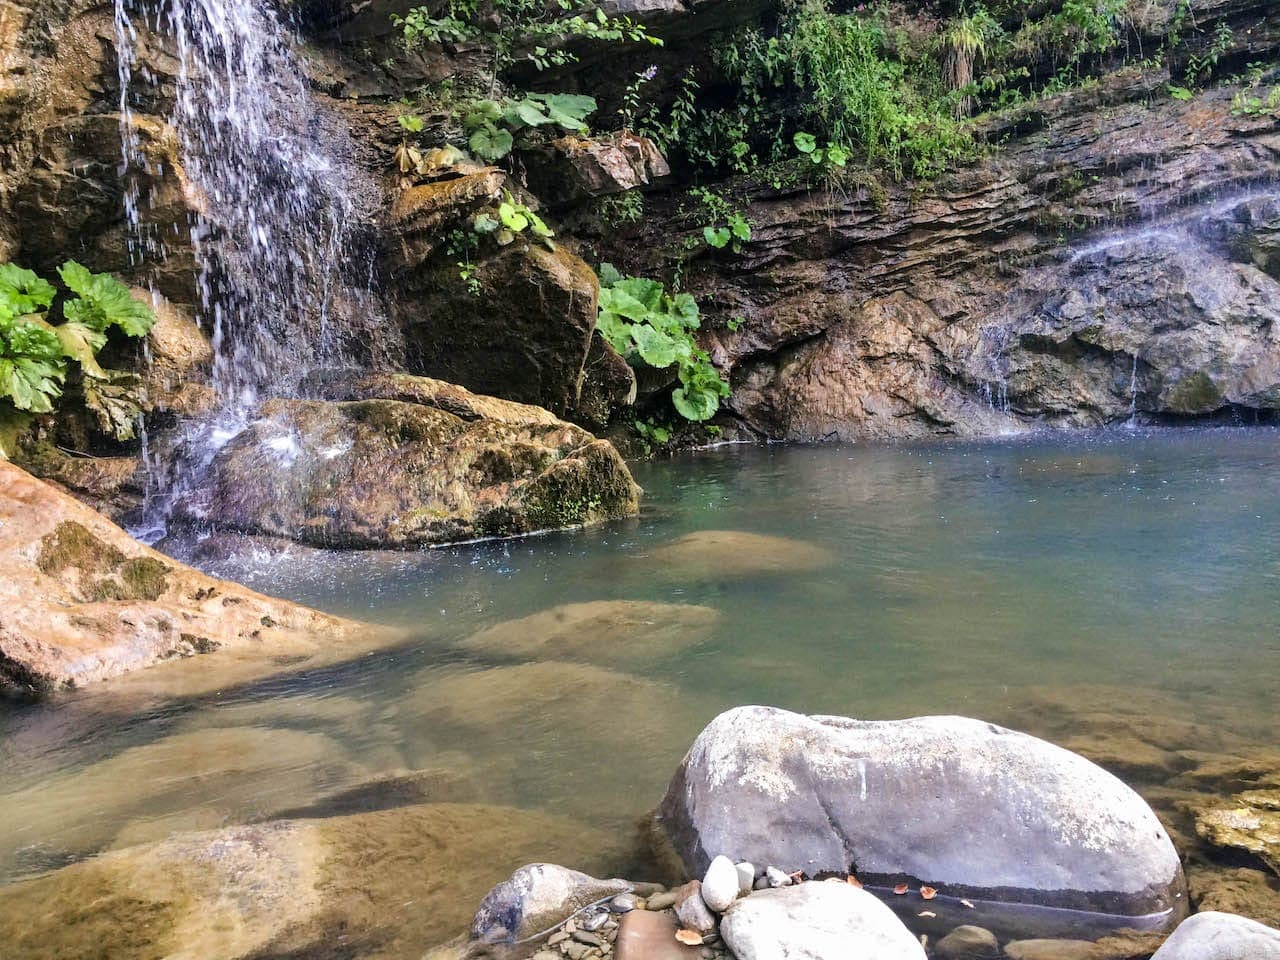 Una cascata sul fiume Staggia nei pressi di Stia